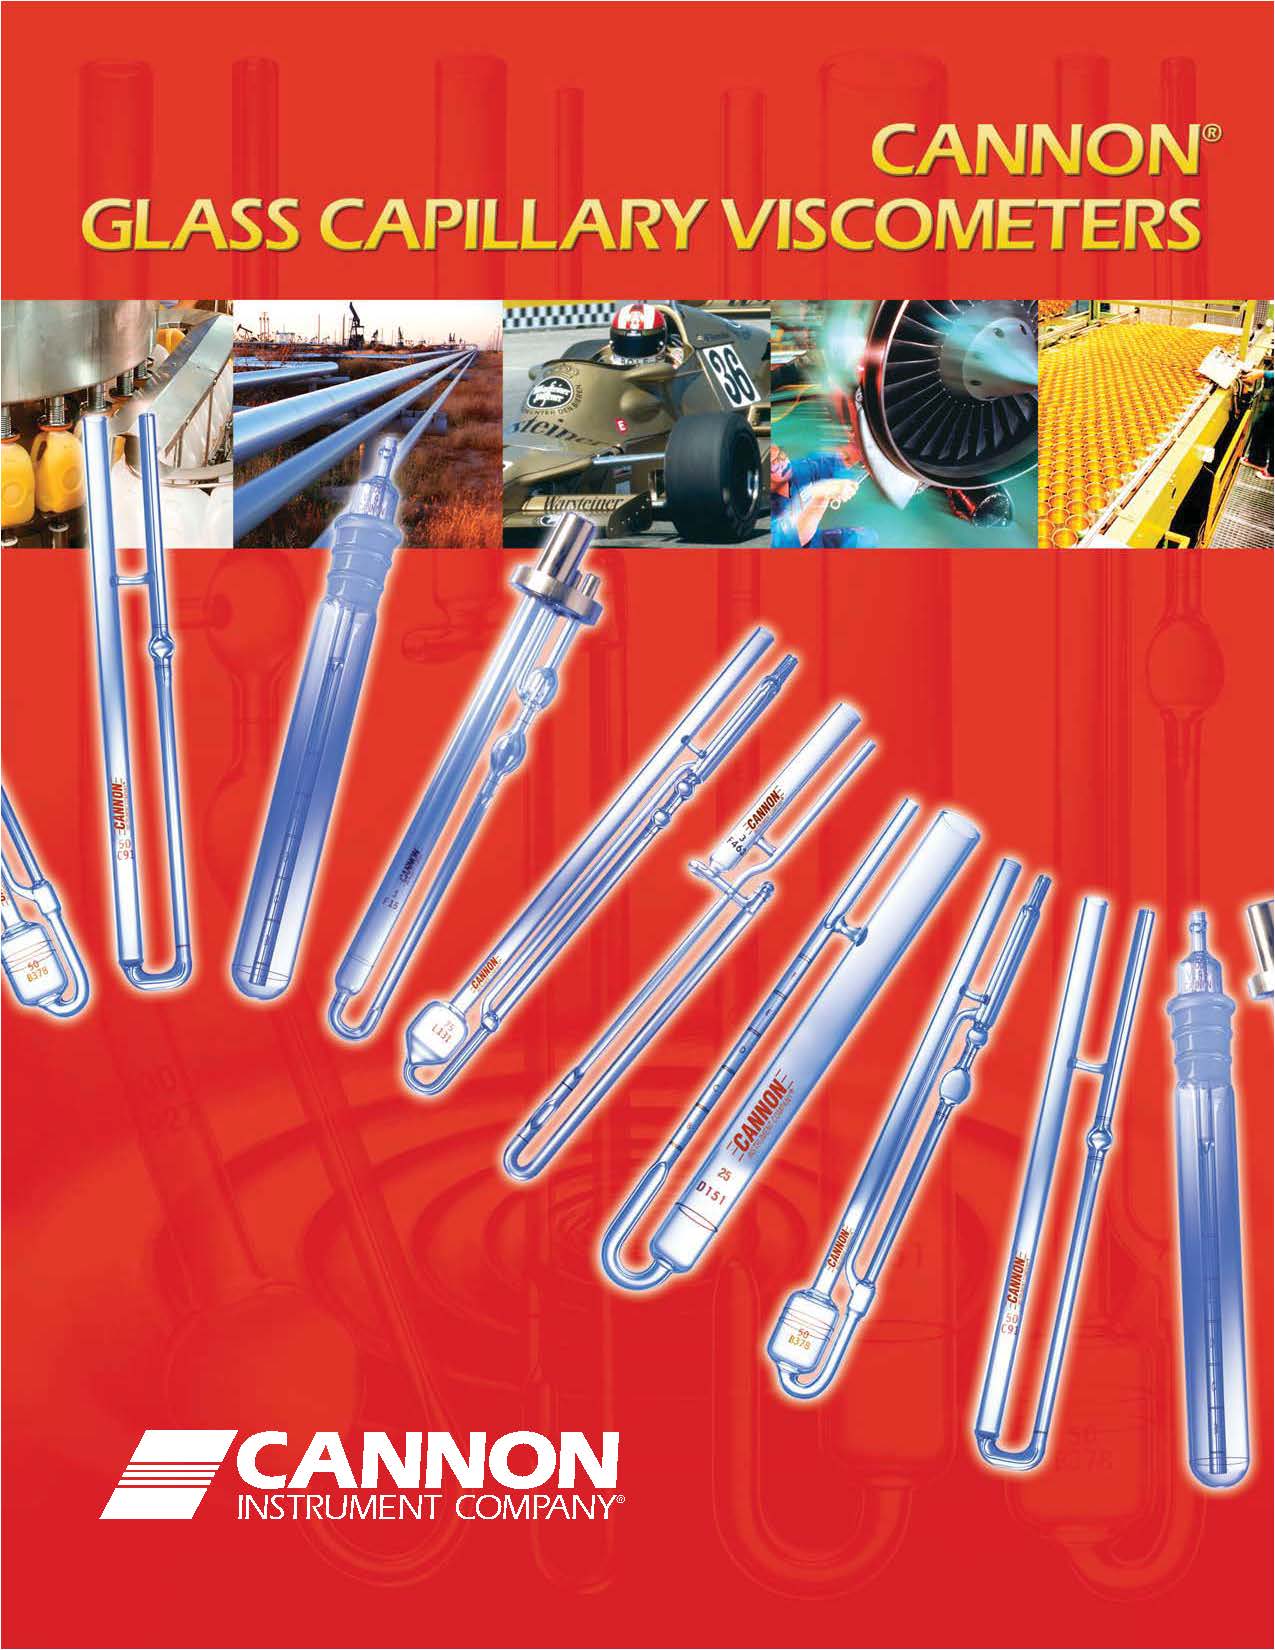 ويسكومتر هاي  شیشه ای کالیبره شده ساخت کمپانی Cannon امریکا